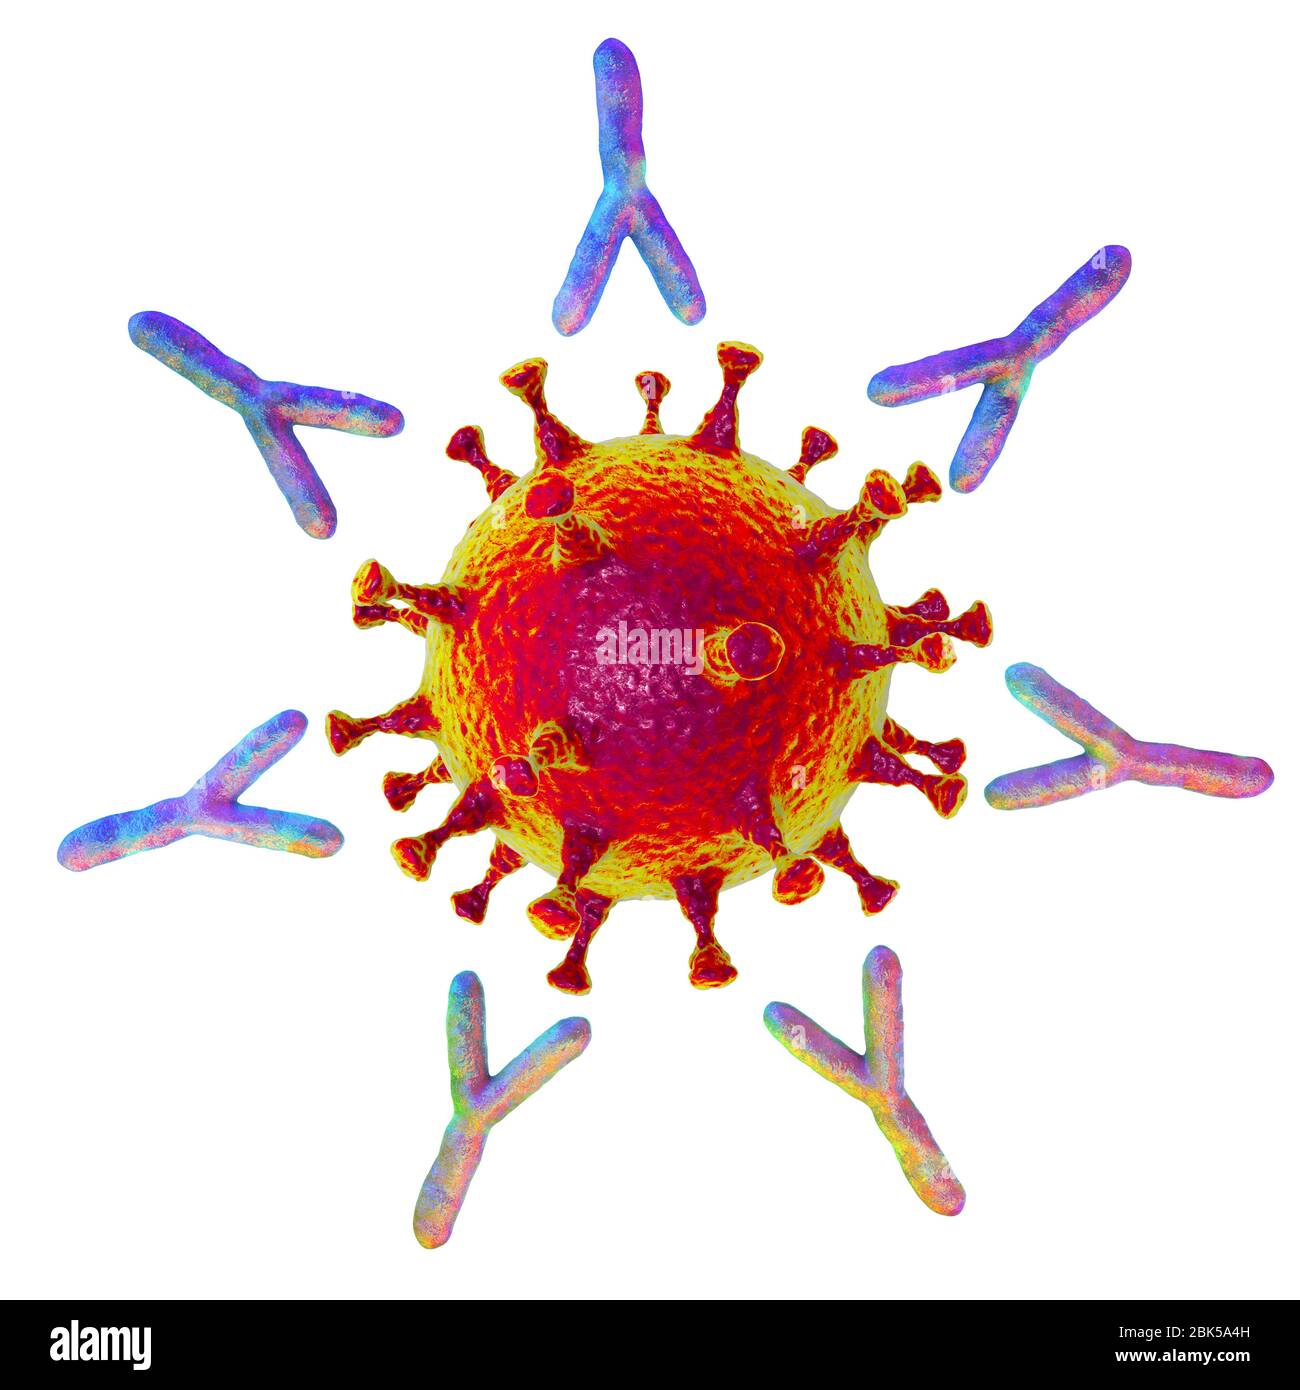 Illustration des anticorps (en forme d'y) qui réagissent à une infection par le nouveau coronavirus SRAS-CoV-2. Le virus est apparu à Wuhan, en Chine, le 2 décembre Banque D'Images